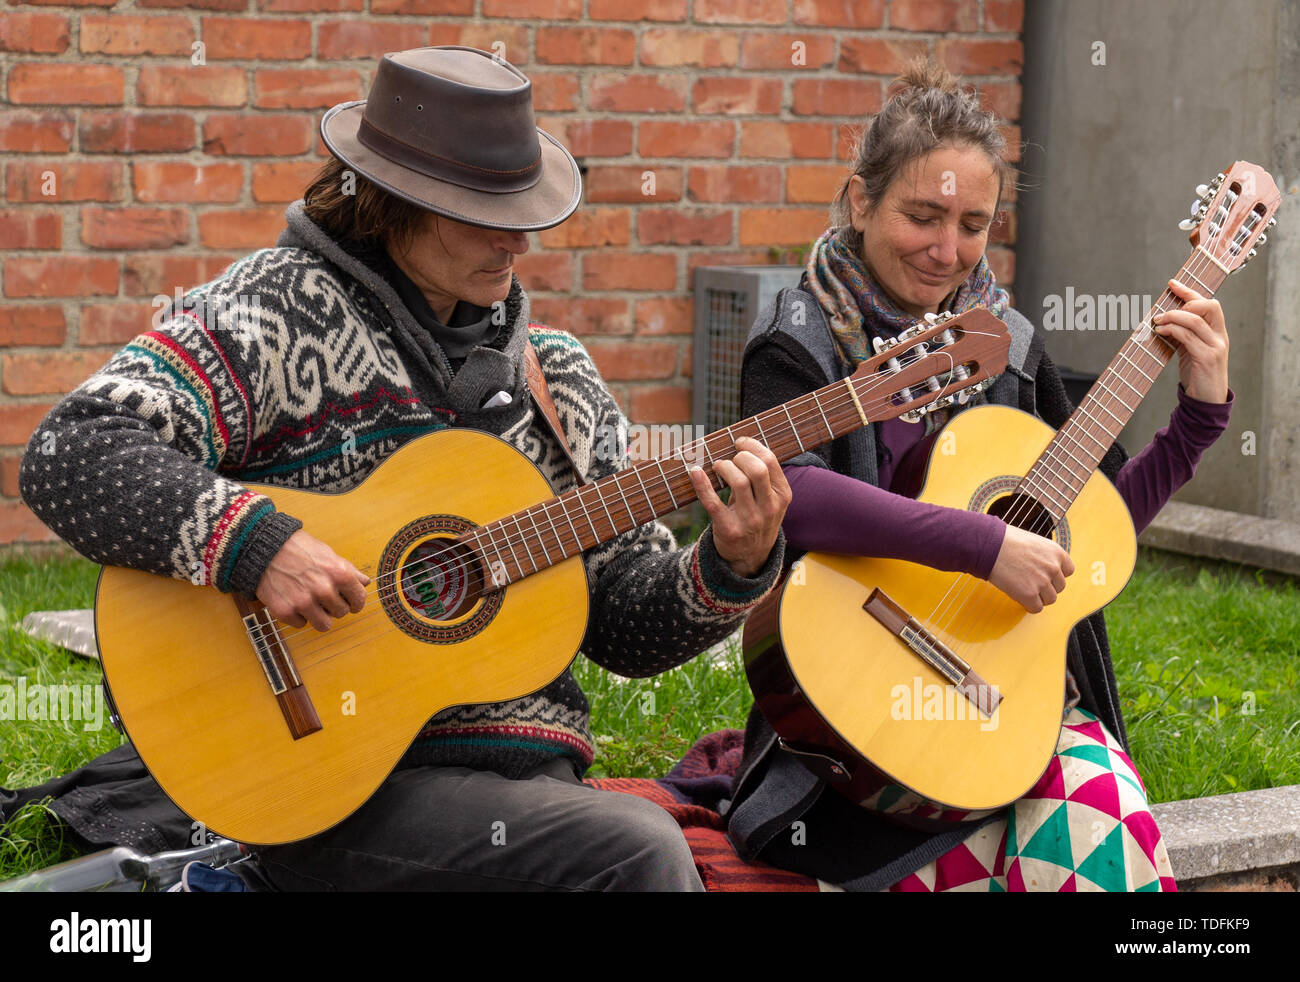 Homme et femme playing acoustic guitars Banque D'Images